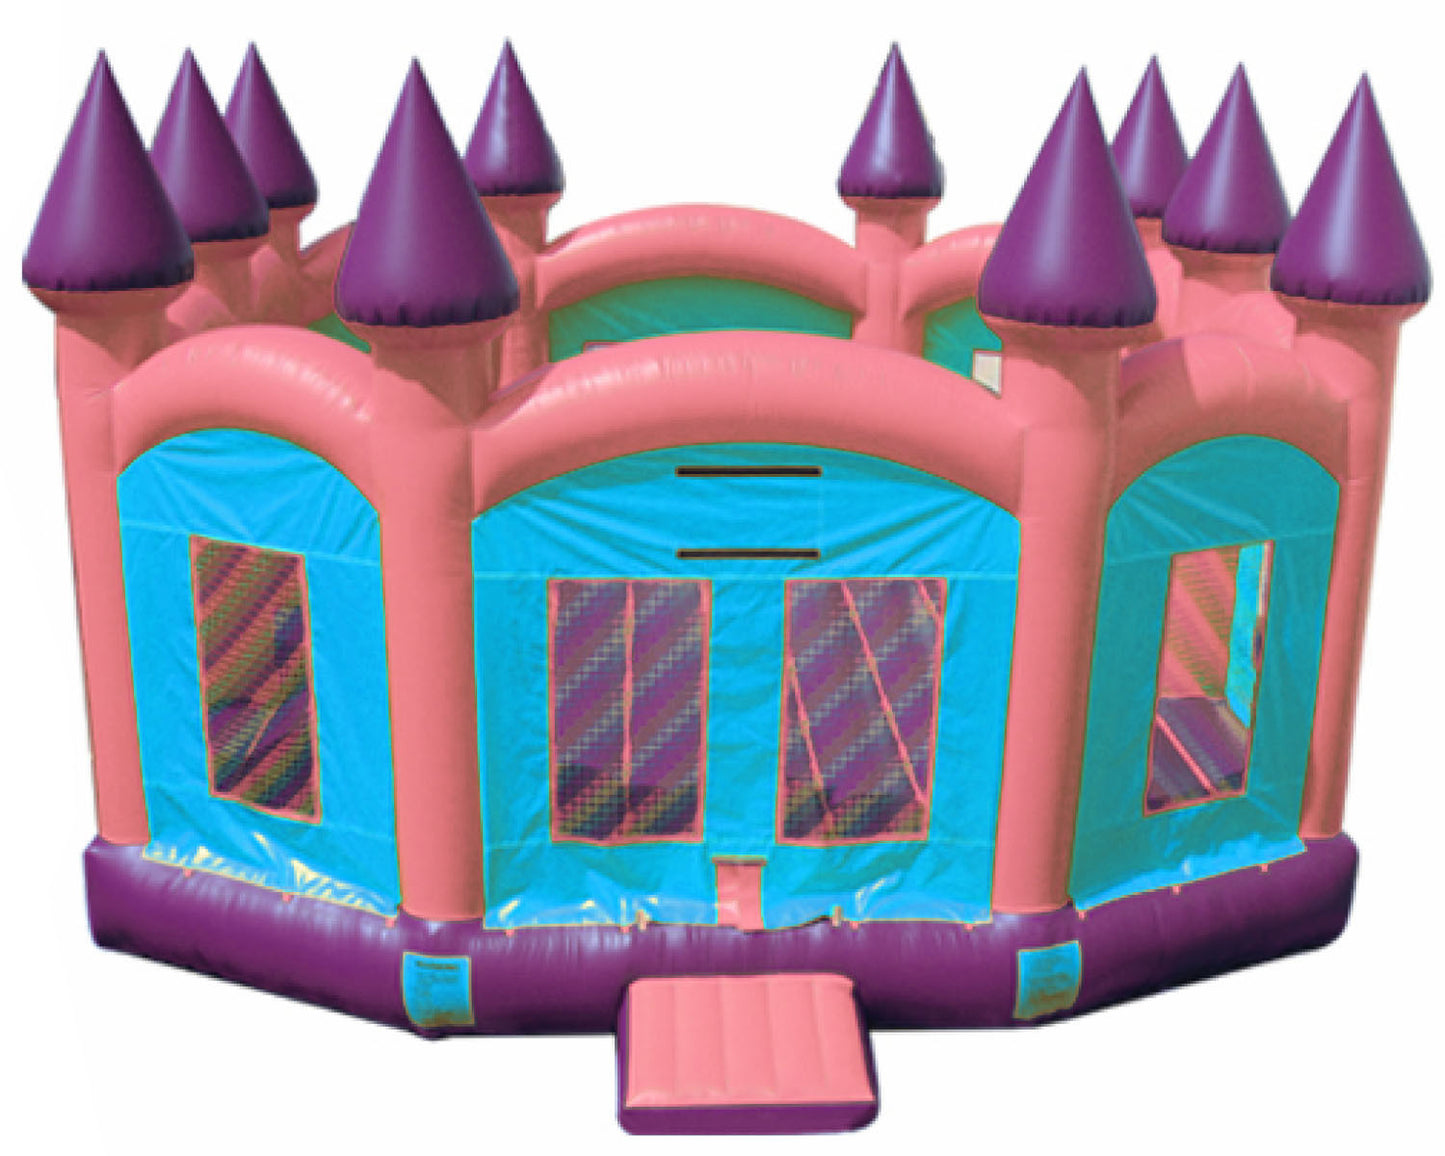 Super size Princess Castle bounce house